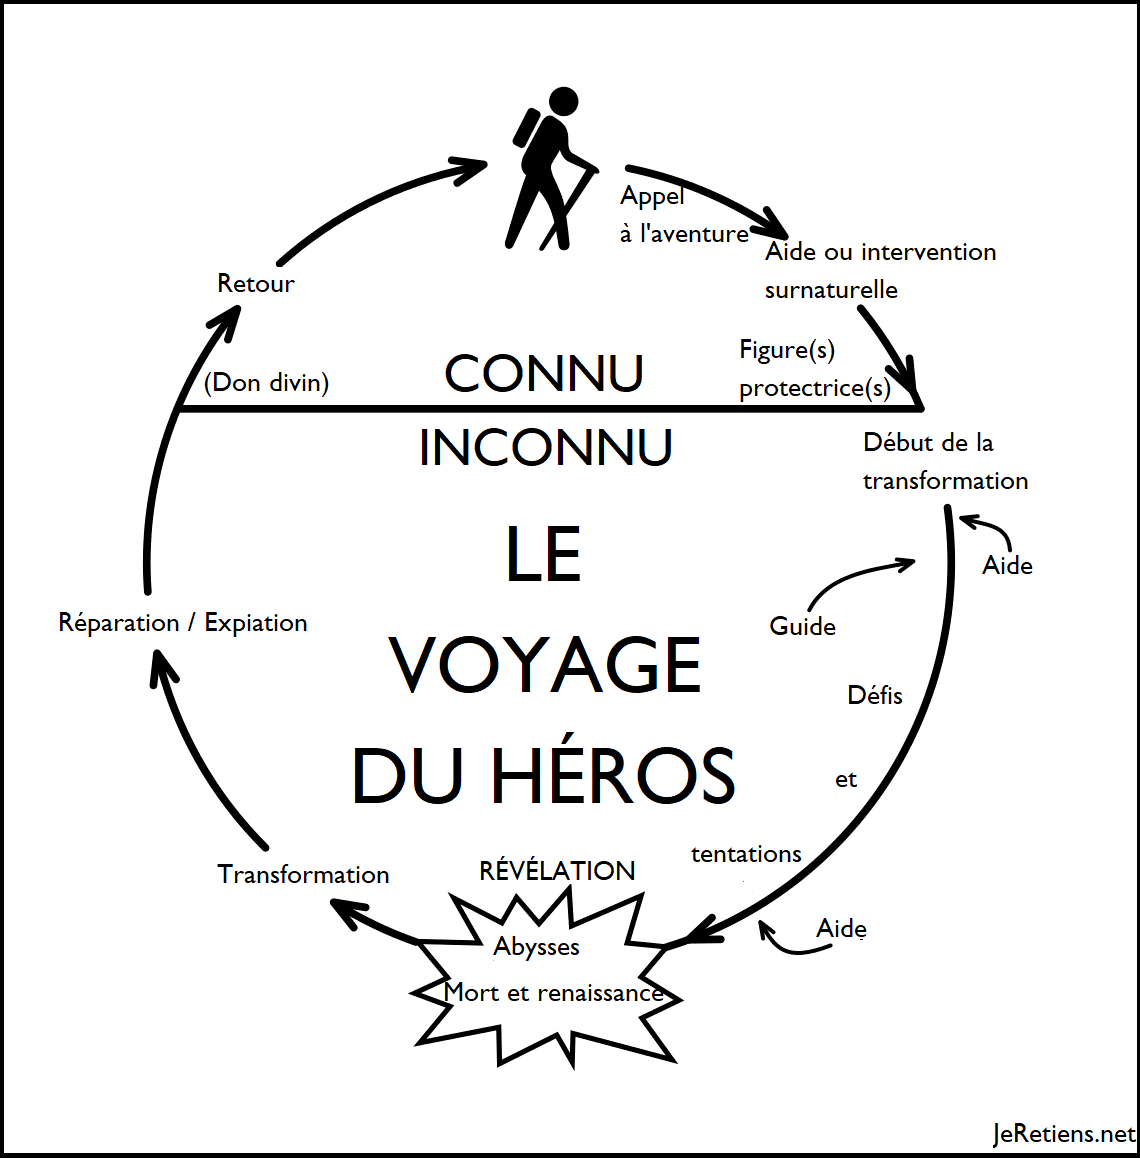 Schéma narratif des étapes du voyage du héros